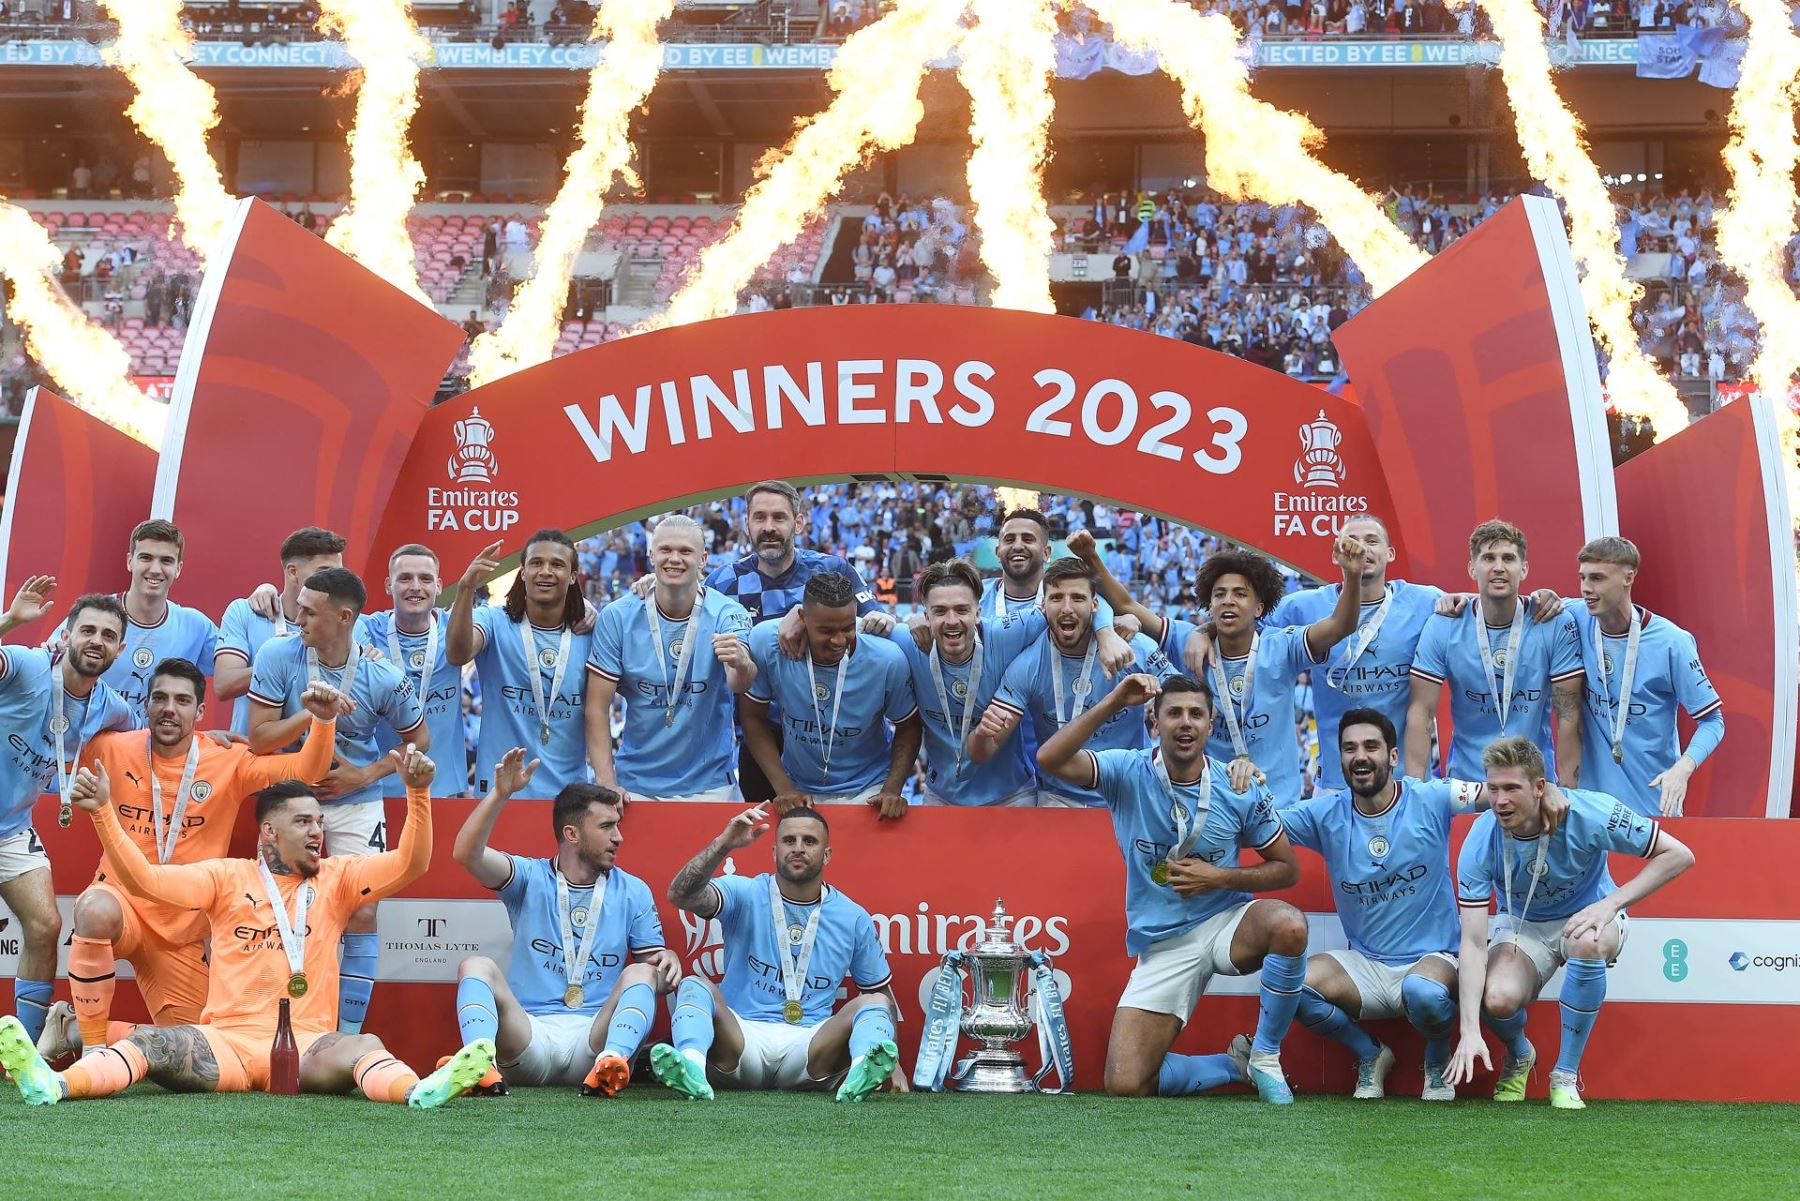 Los jugadores del Manchester City celebran con el trofeo de la Copa FA después de ganar la final de la Copa FA entre el Manchester City y el Manchester United, en Londres, Gran Bretaña, el 3 de junio de 2023. (Reino Unido, Londres)
Foto: EFE